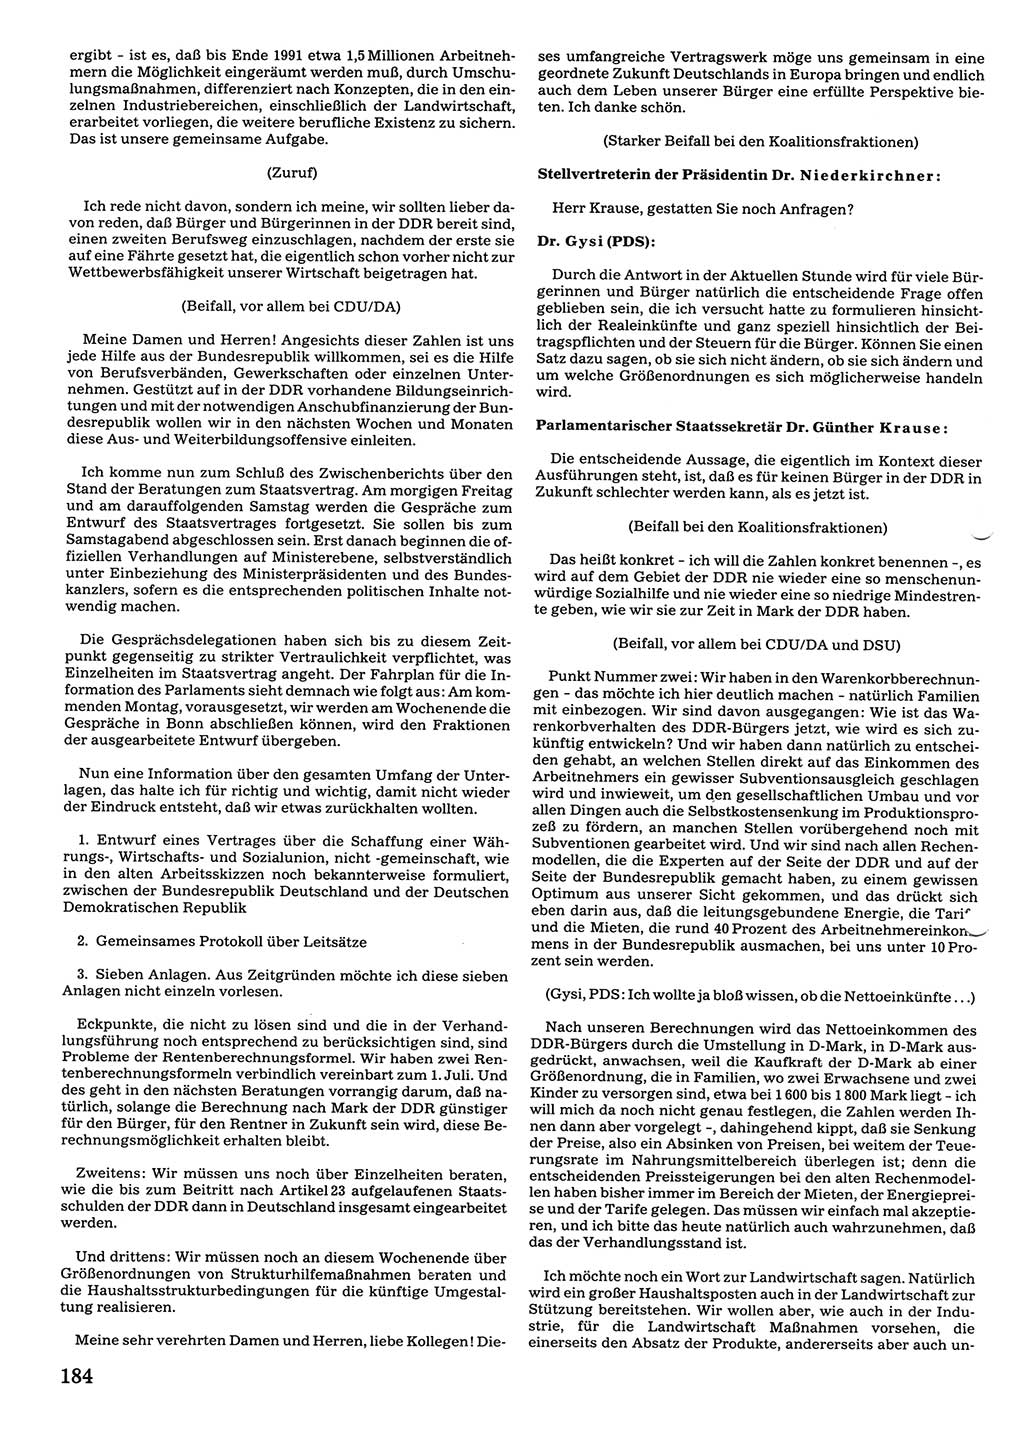 Tagungen der Volkskammer (VK) der Deutschen Demokratischen Republik (DDR), 10. Wahlperiode 1990, Seite 184 (VK. DDR 10. WP. 1990, Prot. Tg. 1-38, 5.4.-2.10.1990, S. 184)